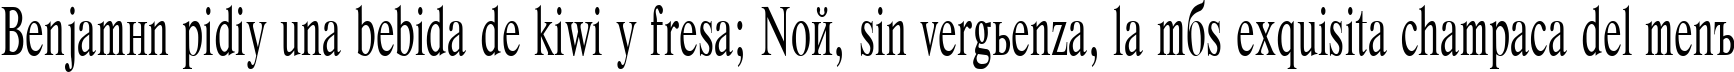 Пример написания шрифтом Respect Plain:001.00155n текста на испанском